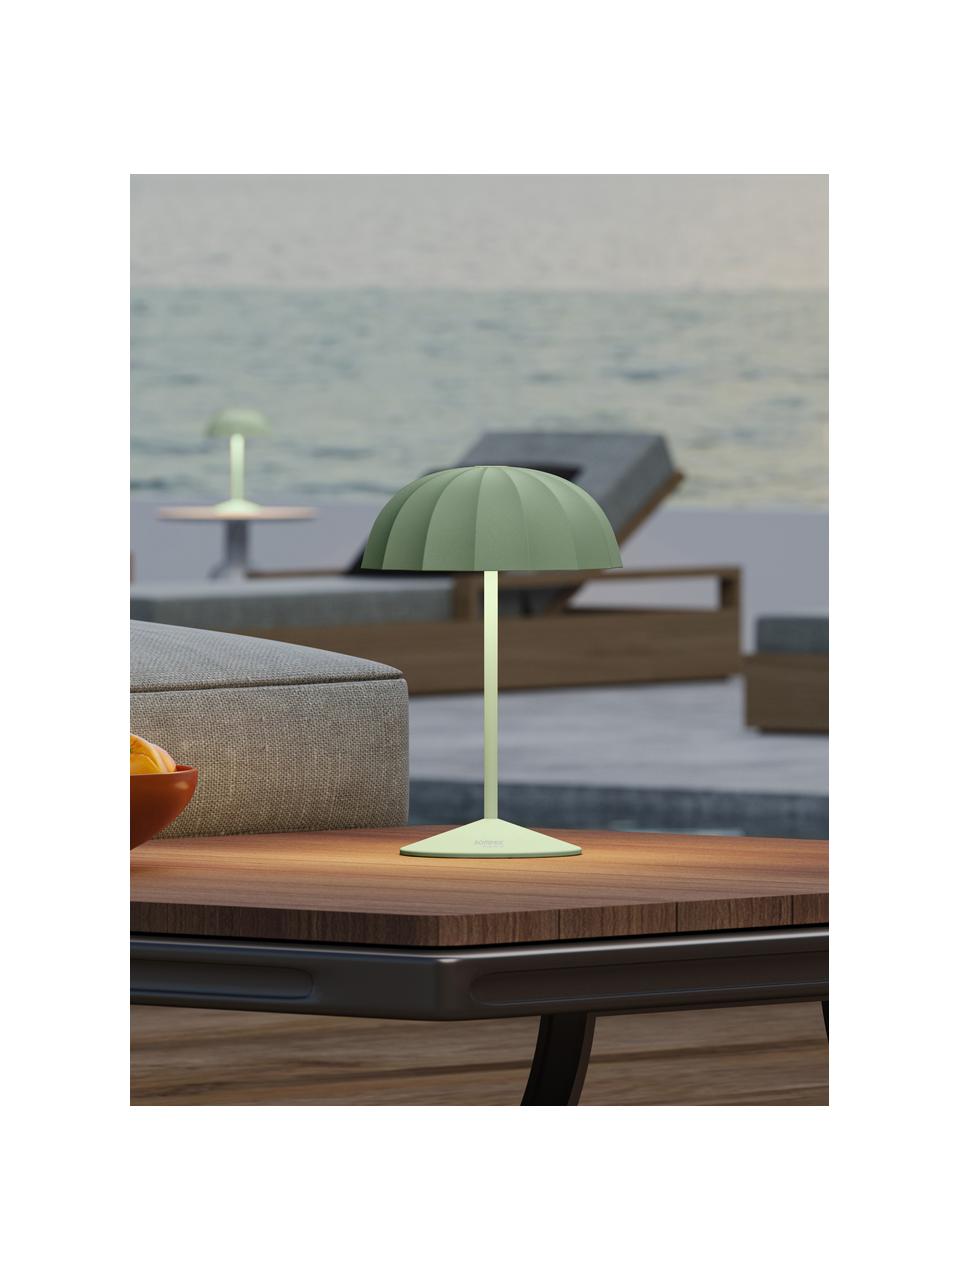 Petite lampe d'extérieur LED mobile Ombrellino, intensité lumineuse variable, Vert olive, Ø 16 x haut. 23 cm